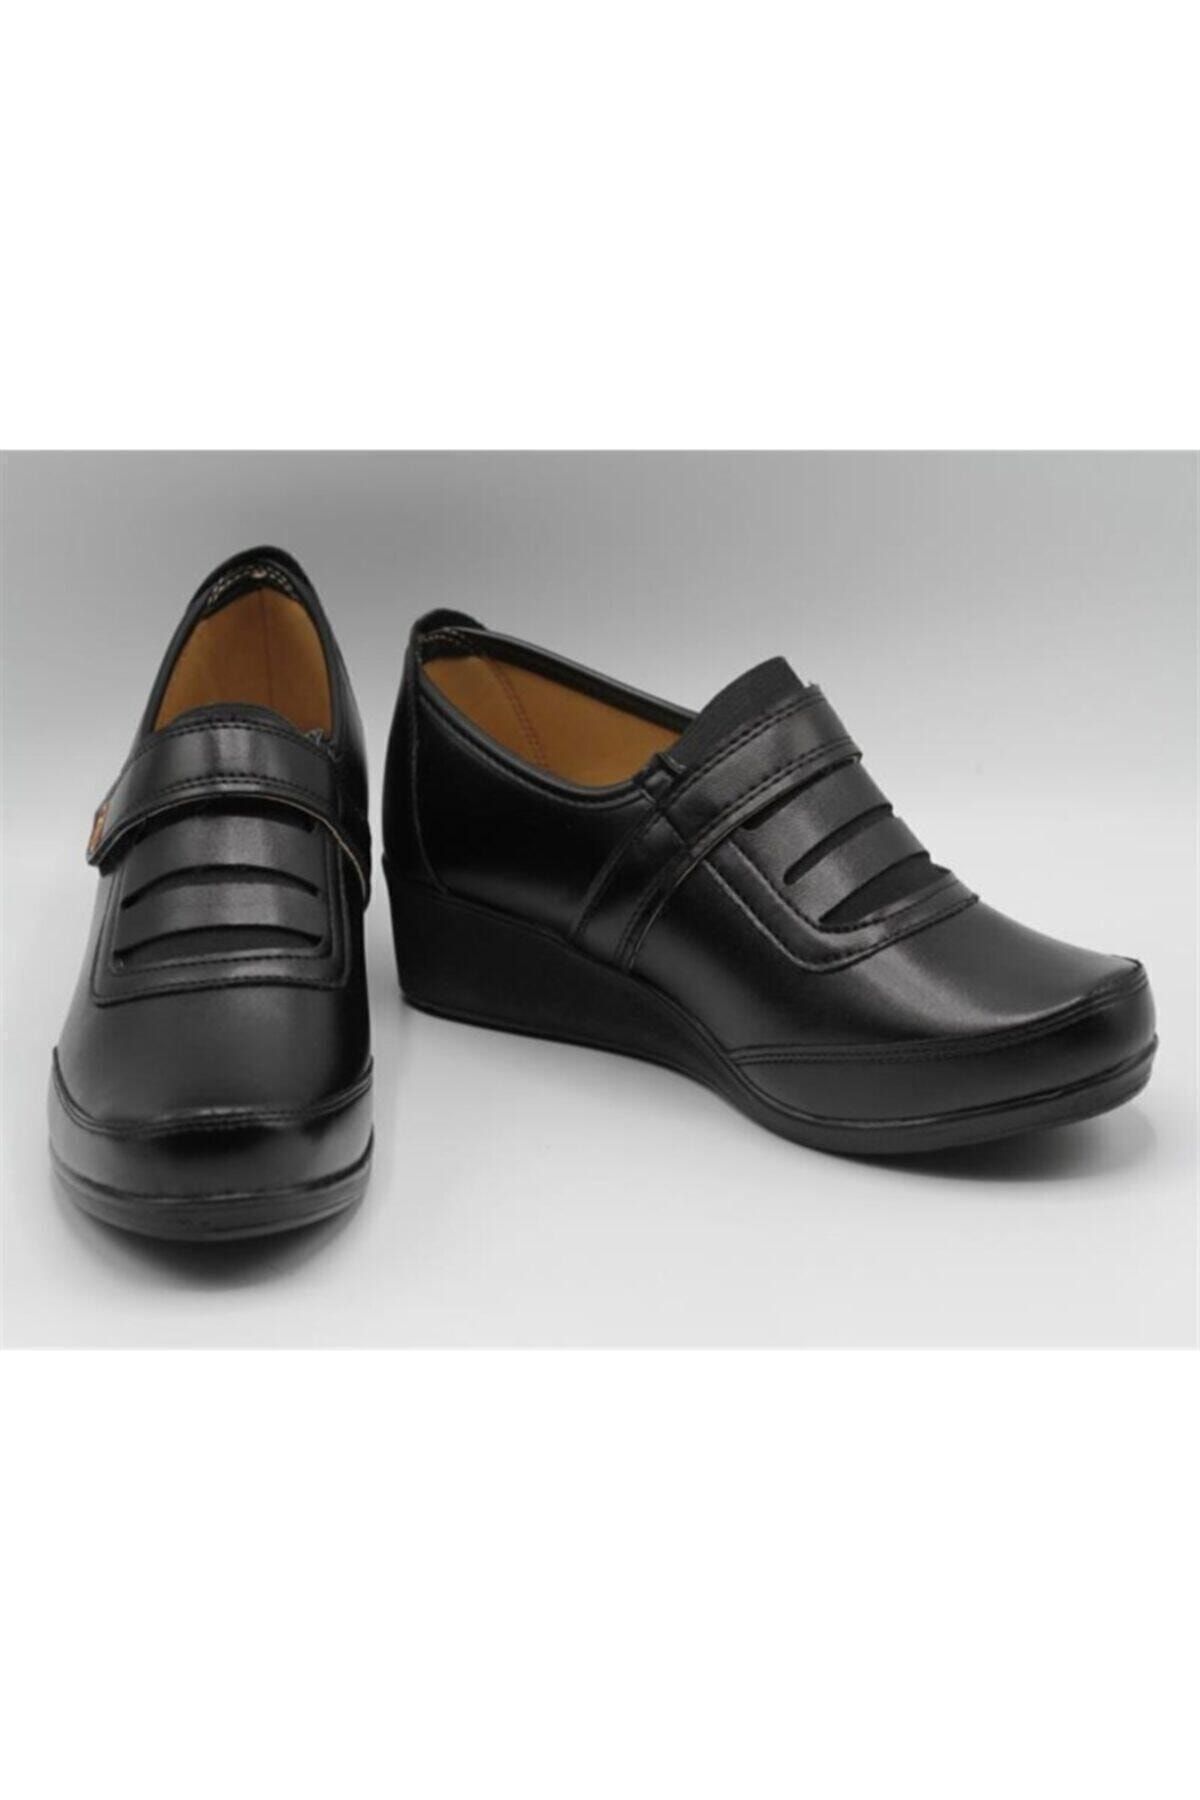 Ayzen Kadın Ortopedik Ayakkabı Klasik Ayakkabı000006